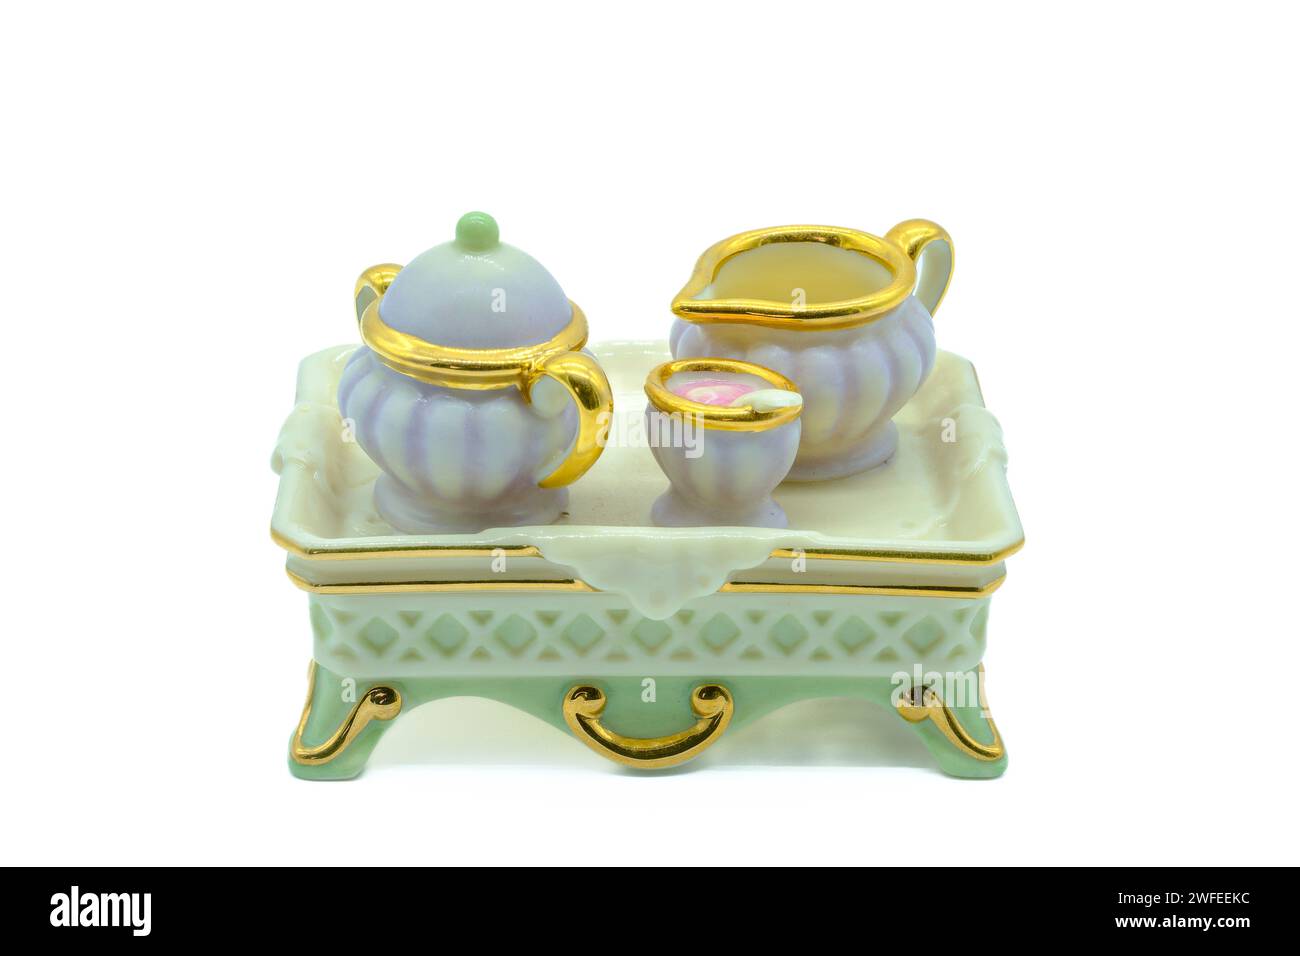 Antikes Mini-Tee-Set aus Bone china mit winzigem Teekanne Milch und Zuckerschale auf einem Serviertablett, das ebenfalls aus Bone china oder Porzellan hergestellt wird Stockfoto